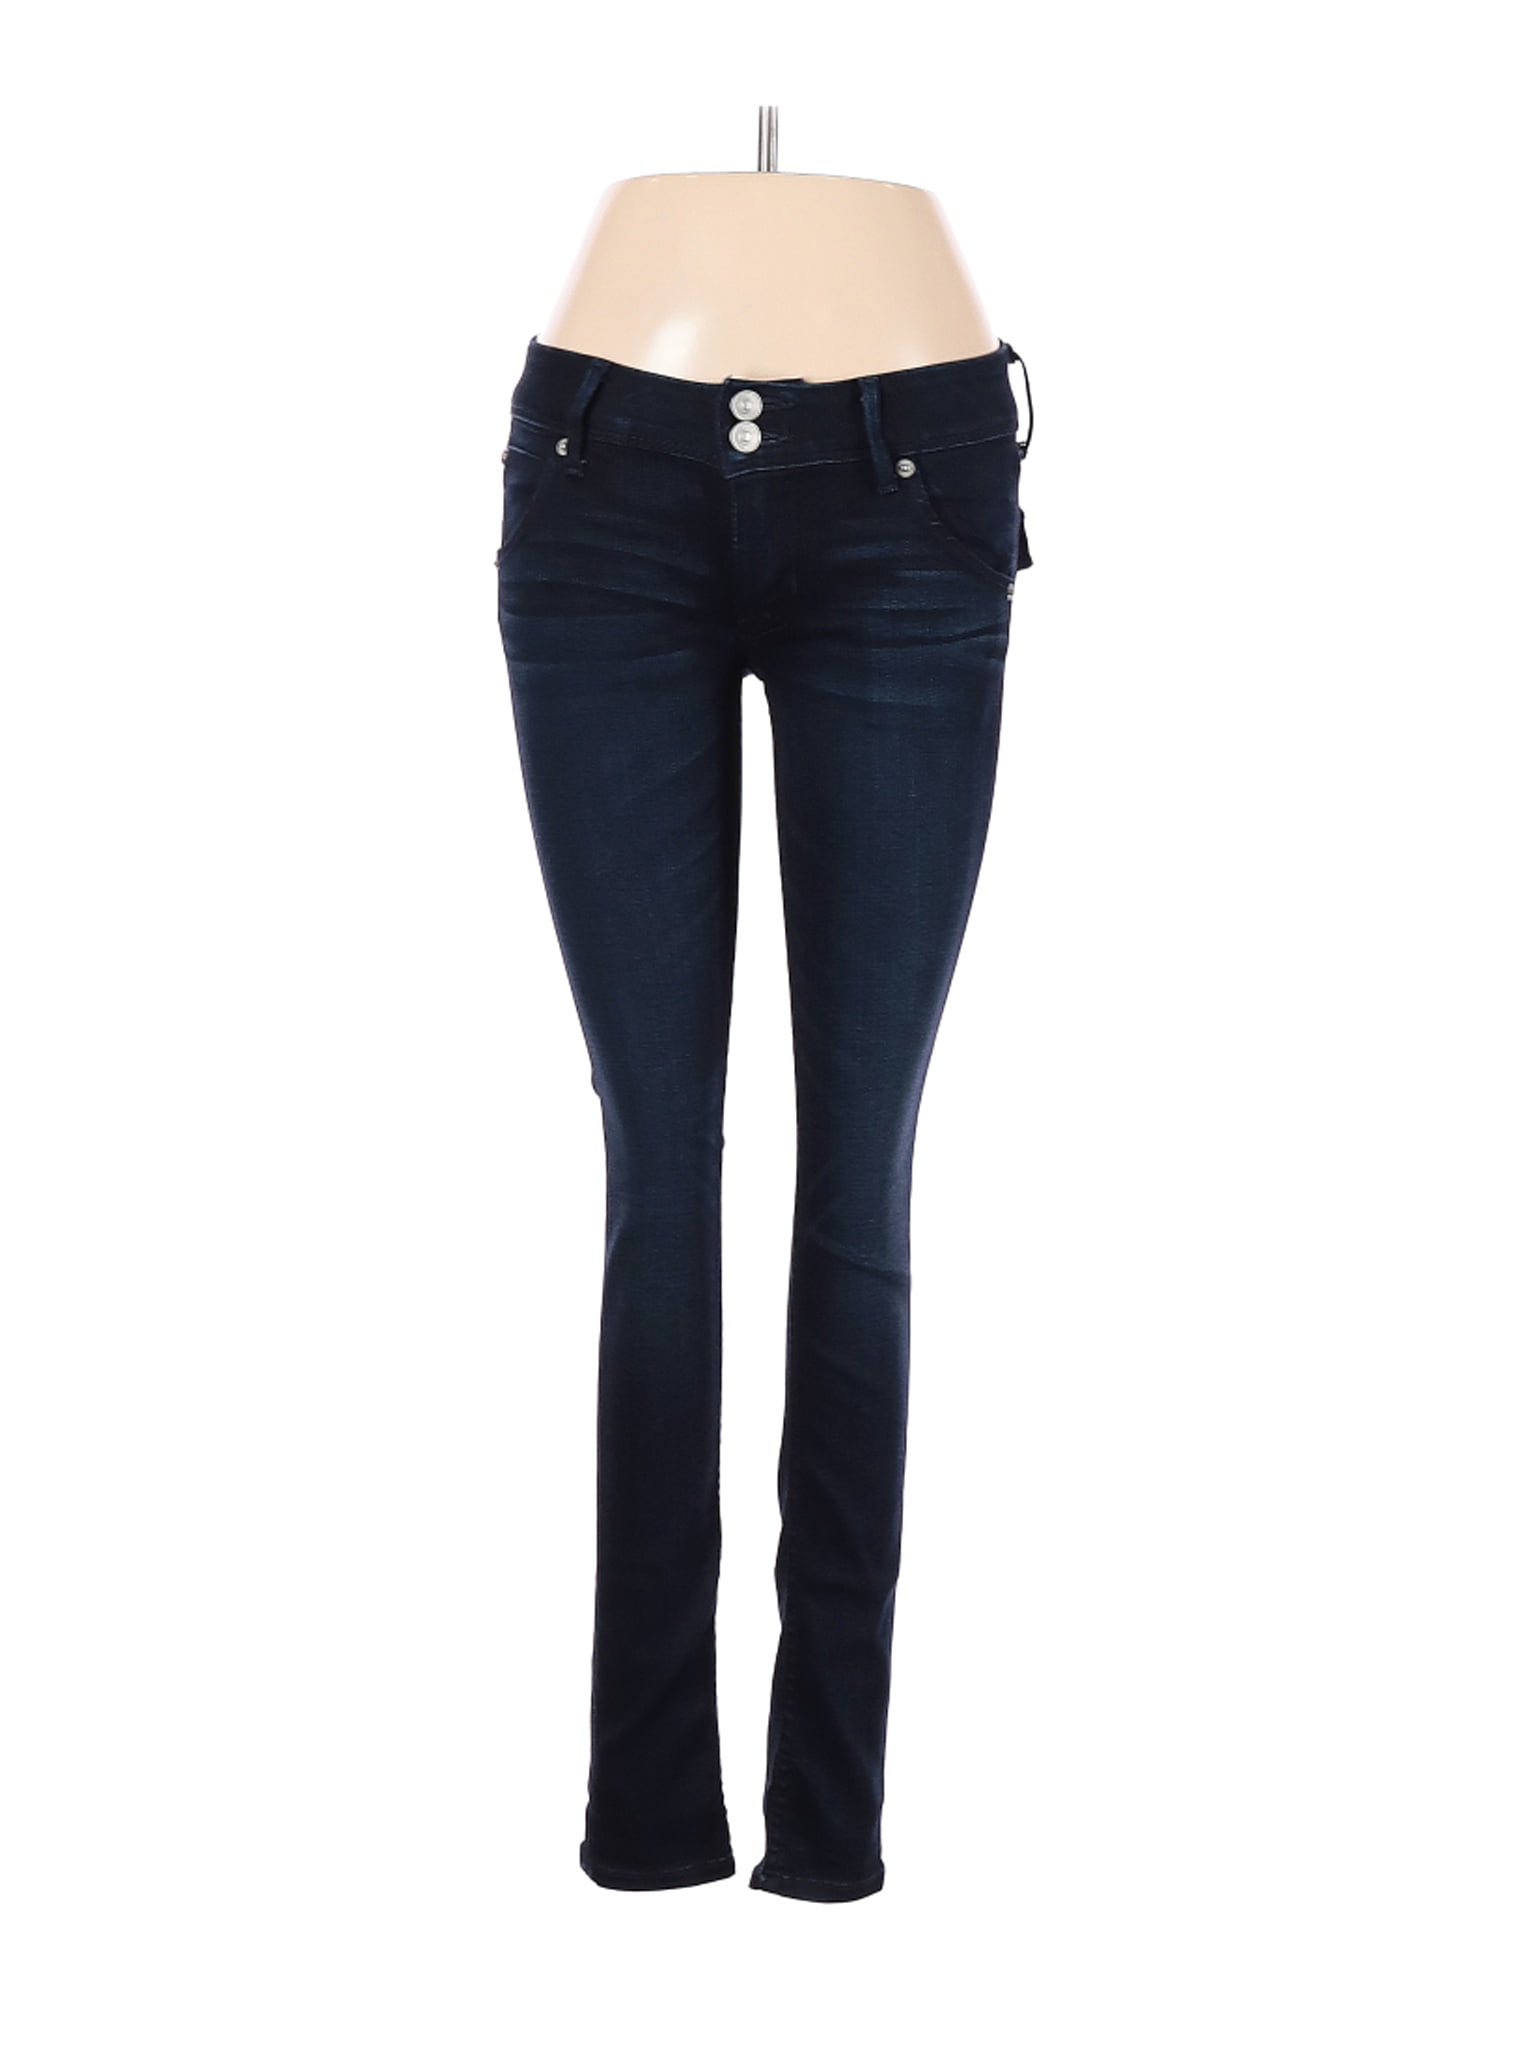 Hudson Jeans - Pre-Owned Hudson Jeans Women's Size 24W Jeans - Walmart ...